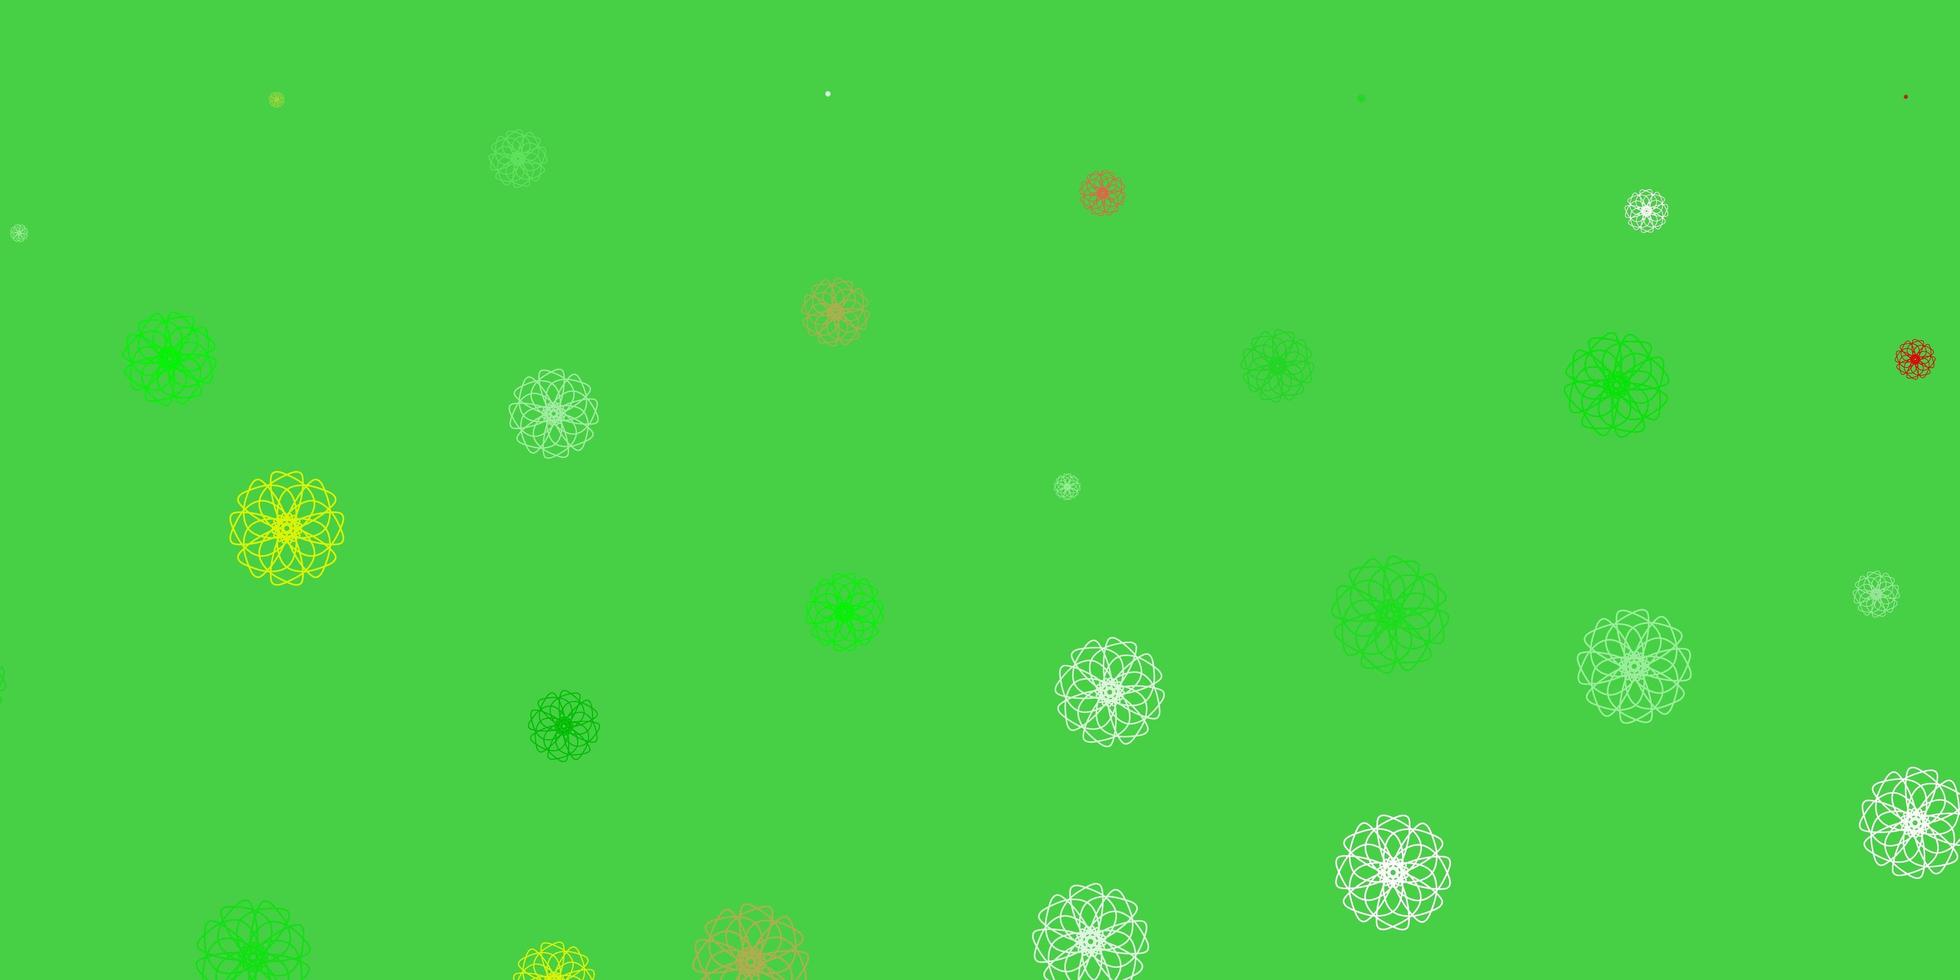 ljusgrön, röd vektor doodle bakgrund med blommor.